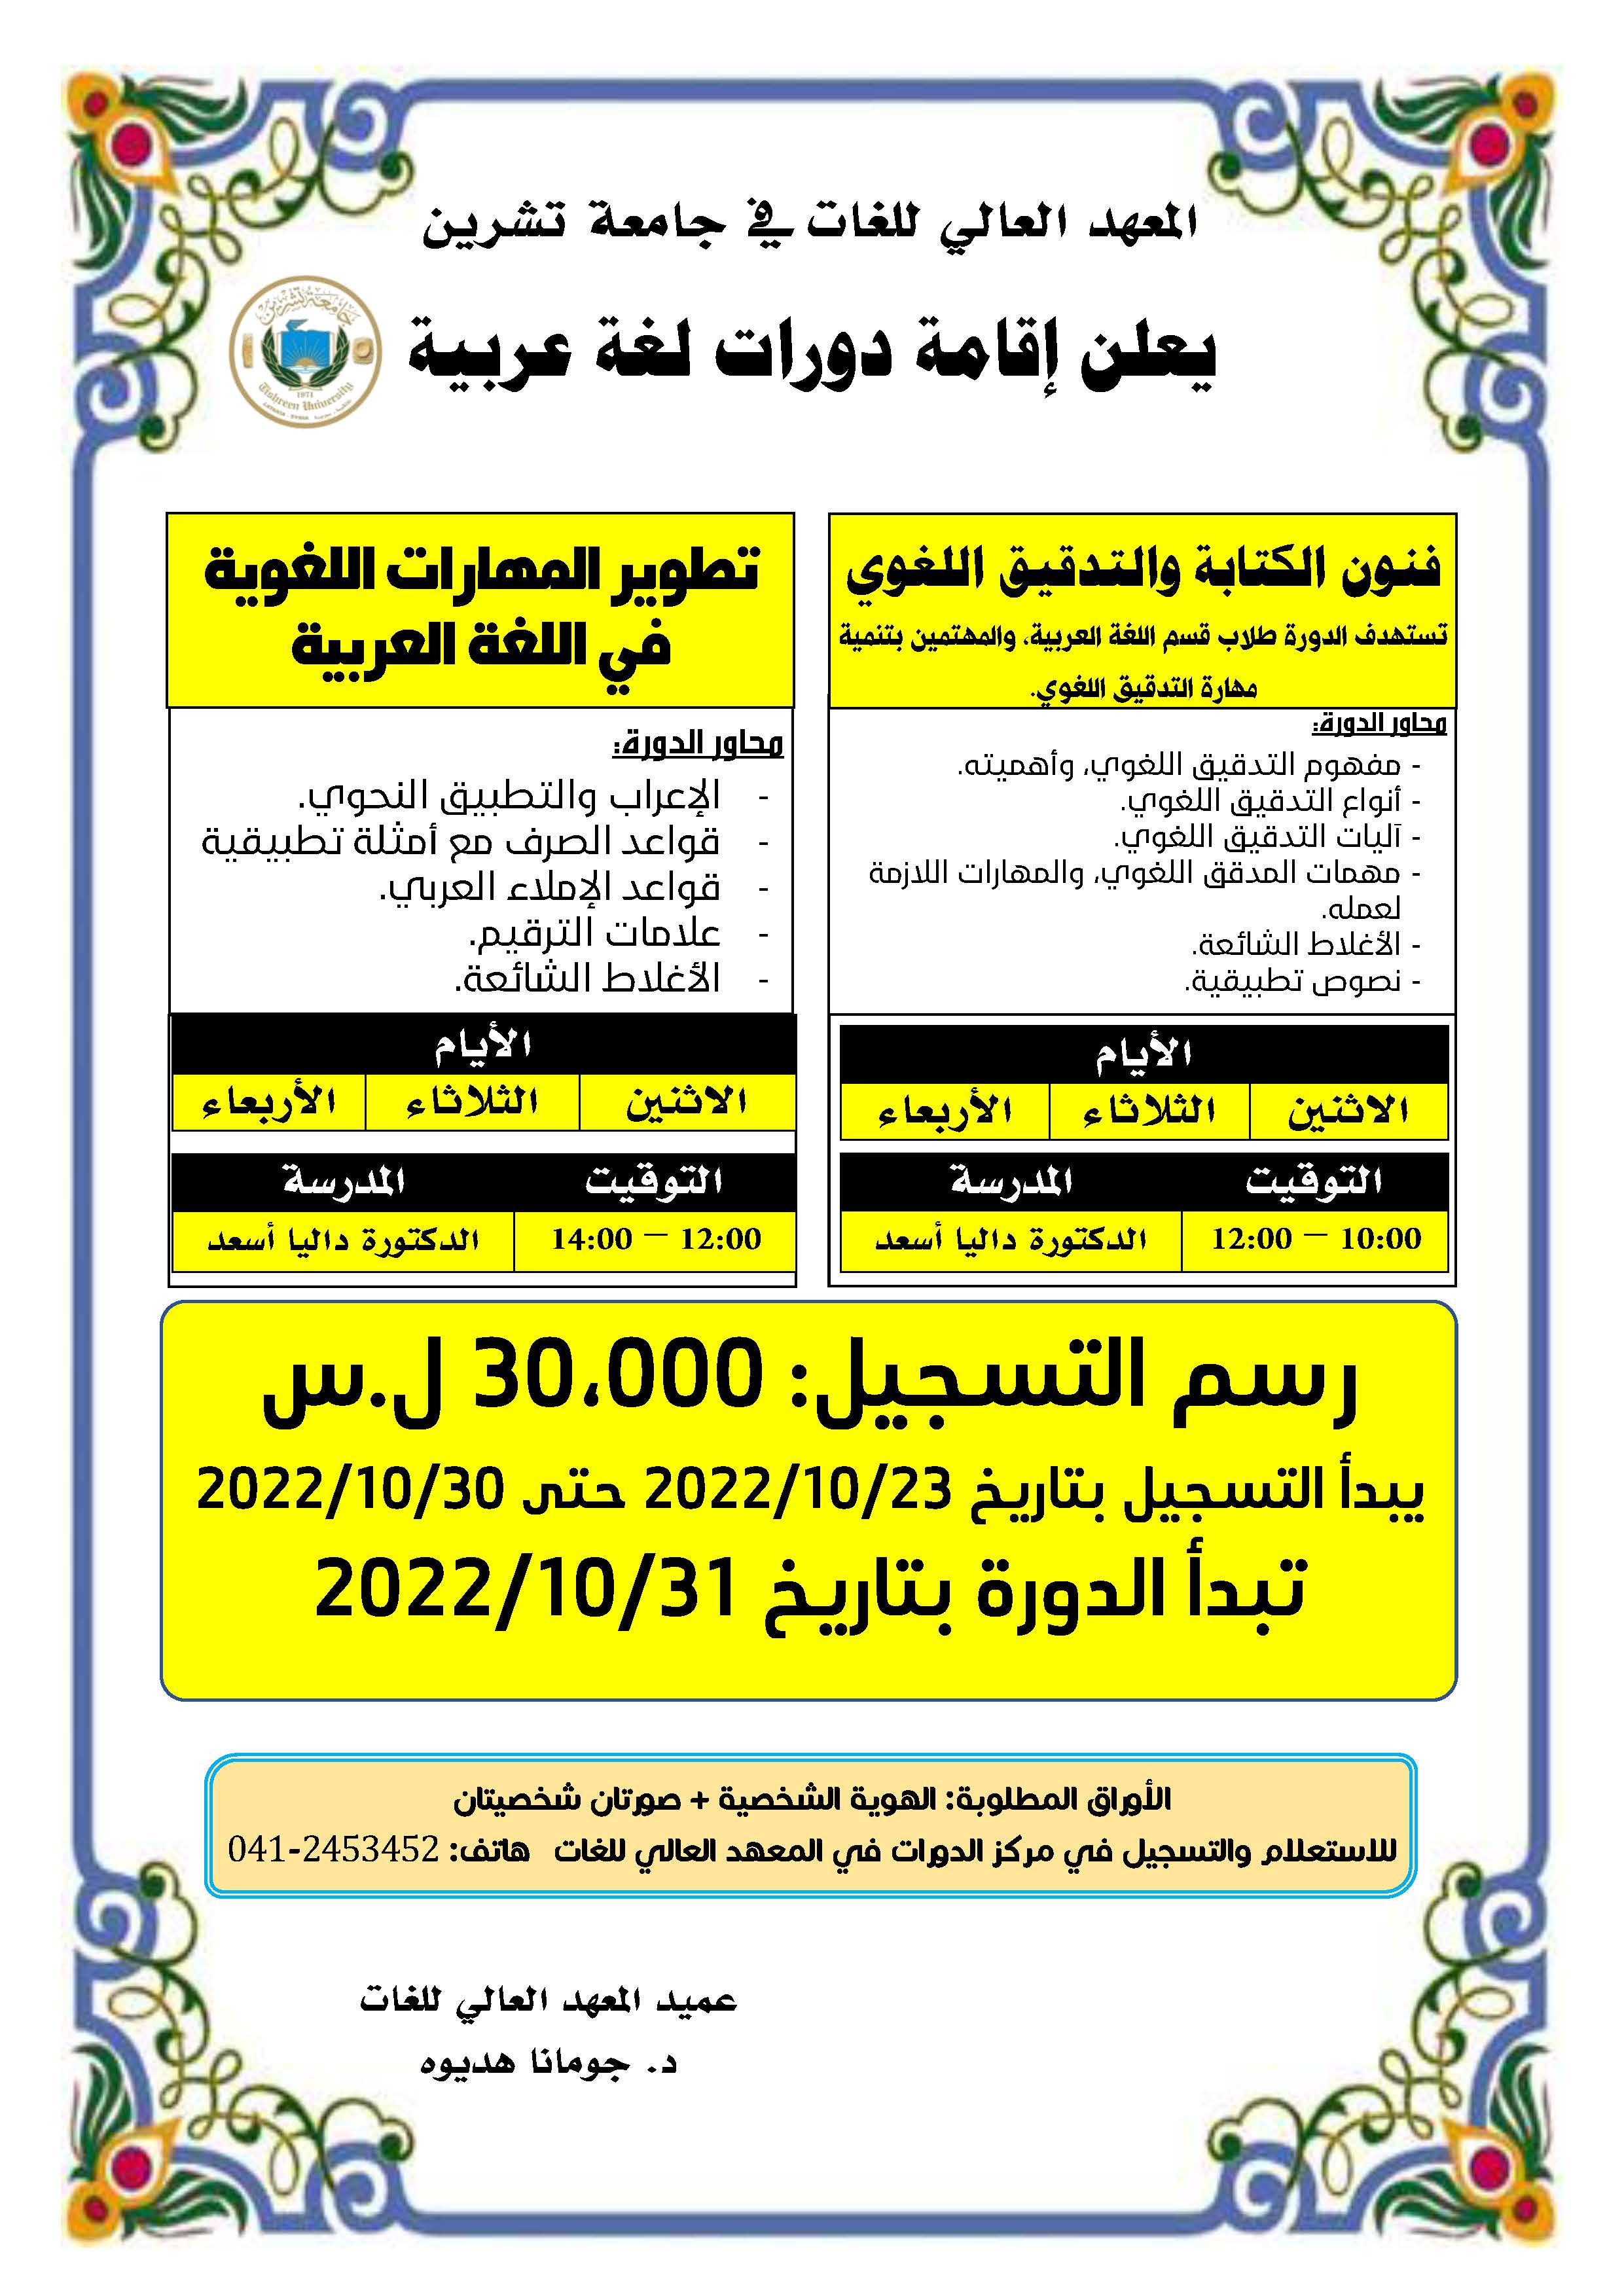 المعهد العالي للغات يعلن إقامة دورات في اللغة العربية تبدء بتاريخ 31-10-2022